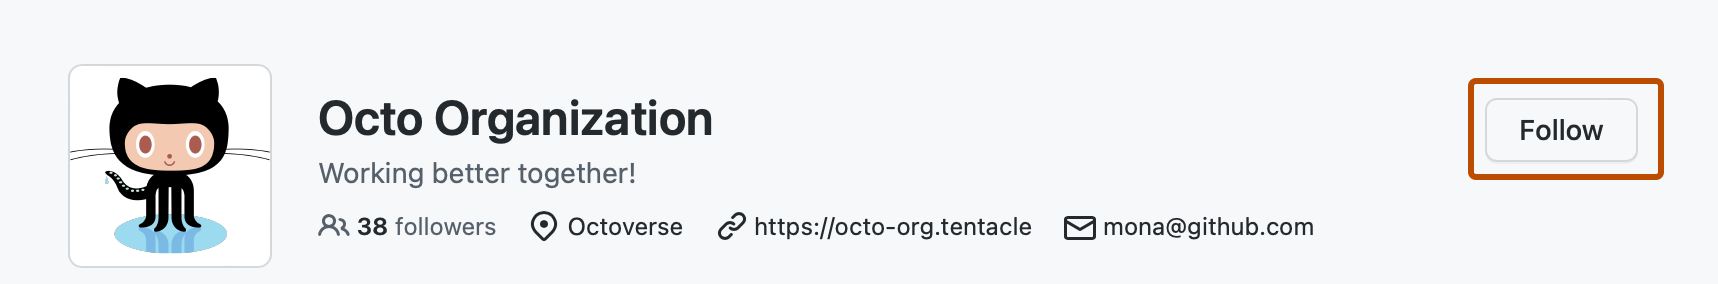 Captura de pantalla de la página de perfil de @octo-org. Un botón, con la etiqueta "Seguir", se destaca en naranja oscuro.